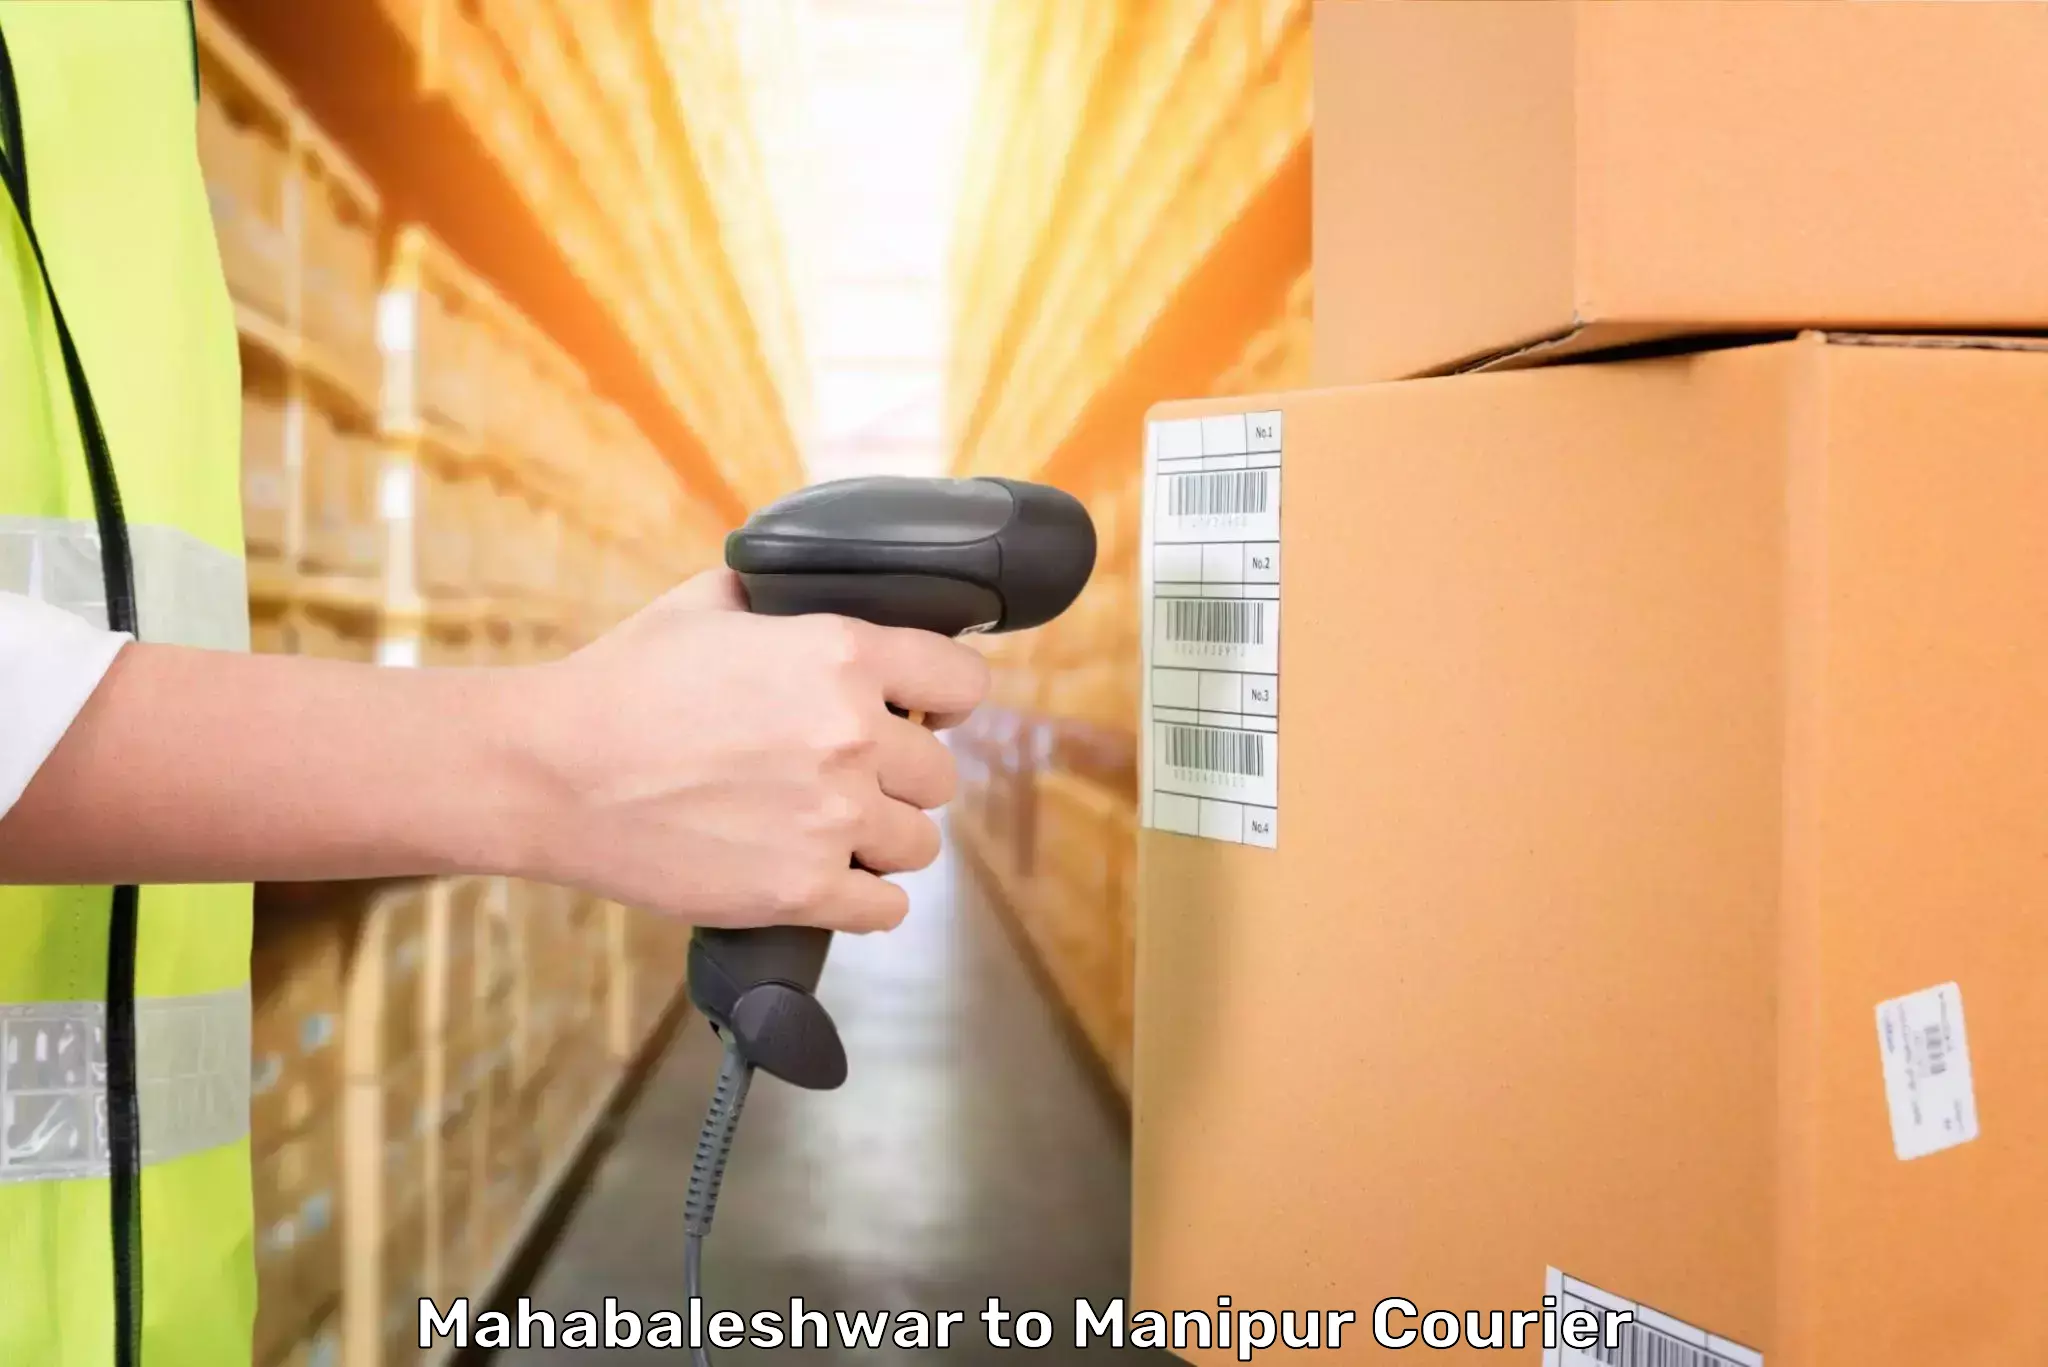 Luggage shipment specialists Mahabaleshwar to Jiribam